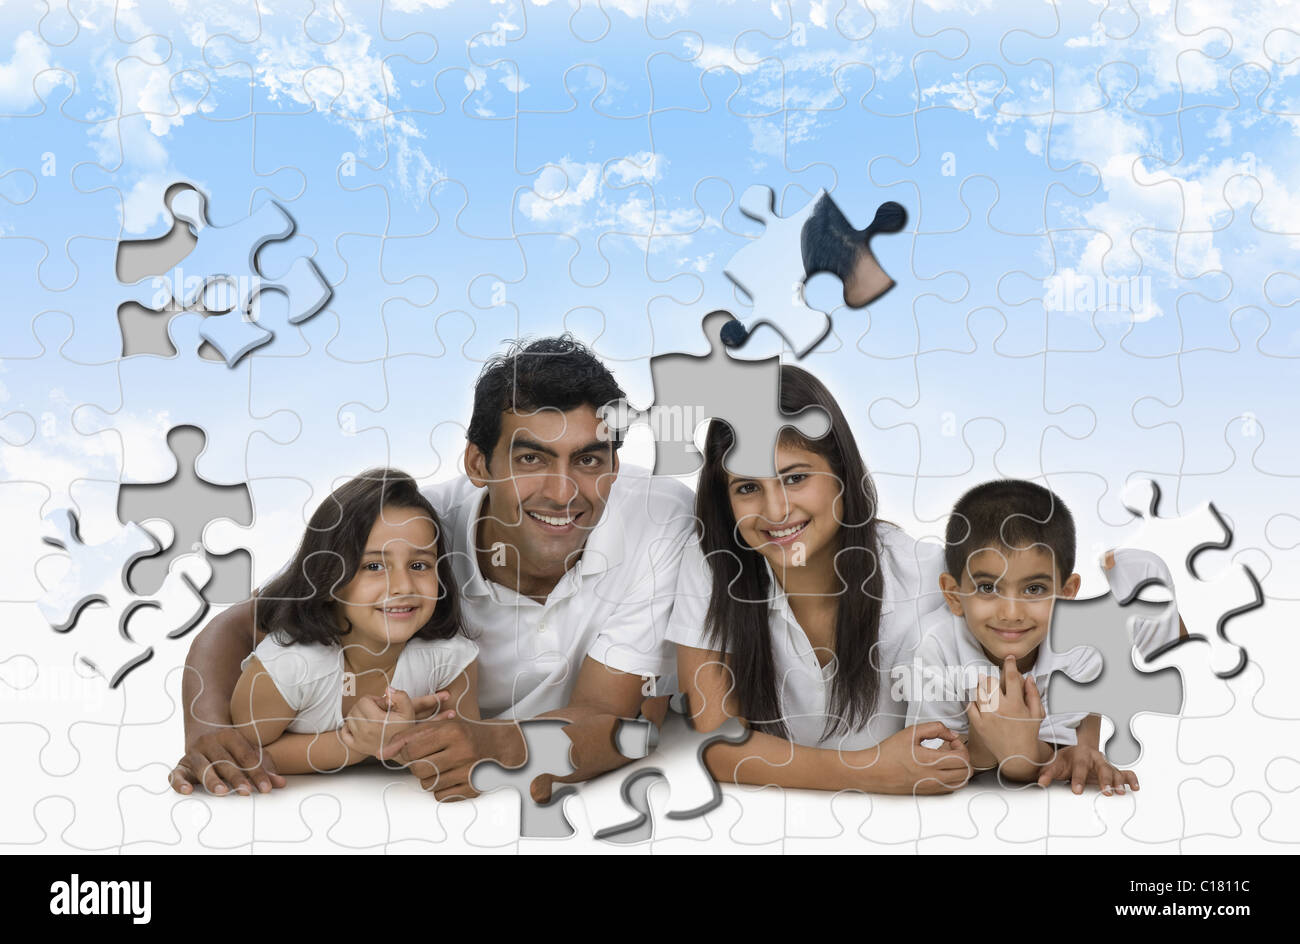 Imagen de una familia hecha de piezas de rompecabezas Fotografía de stock -  Alamy